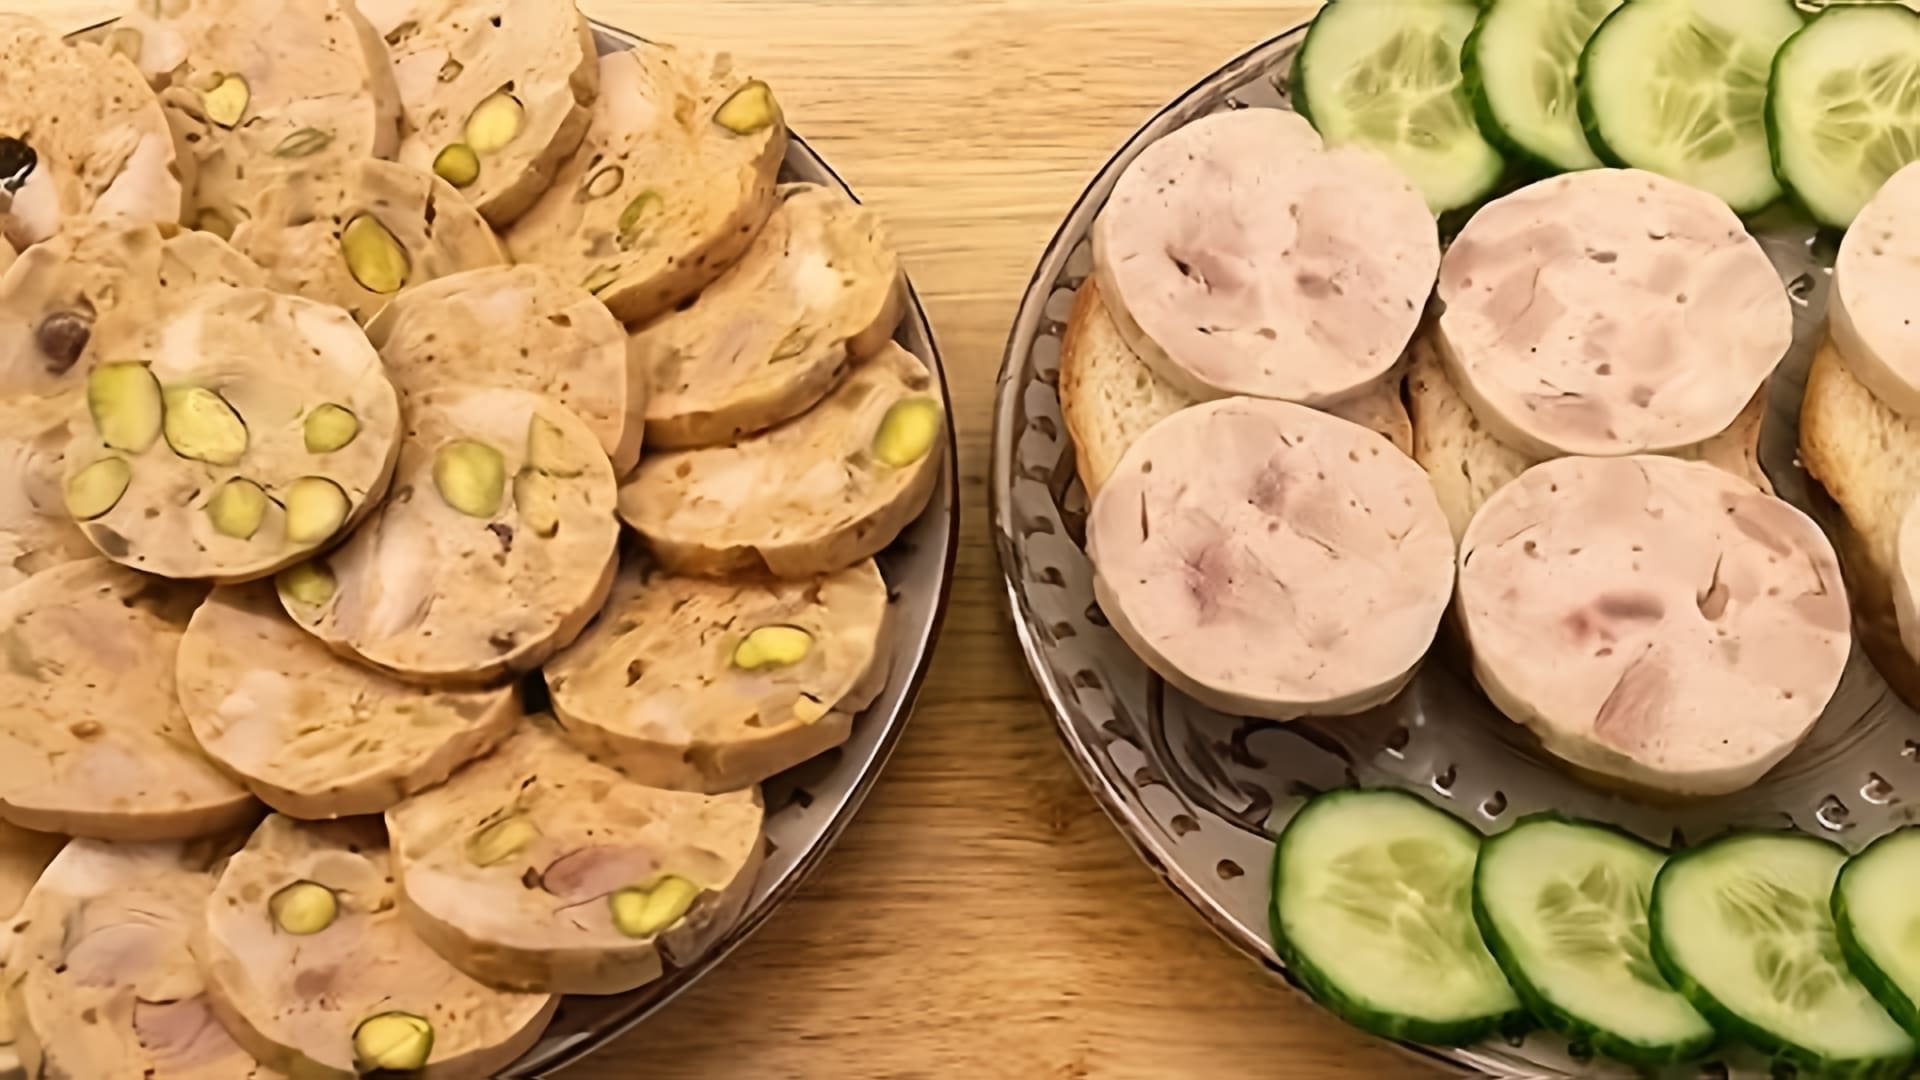 В этом видео демонстрируется процесс приготовления домашней куриной колбасы двух видов: праздничной с различными добавками и простой для детей на бутерброды